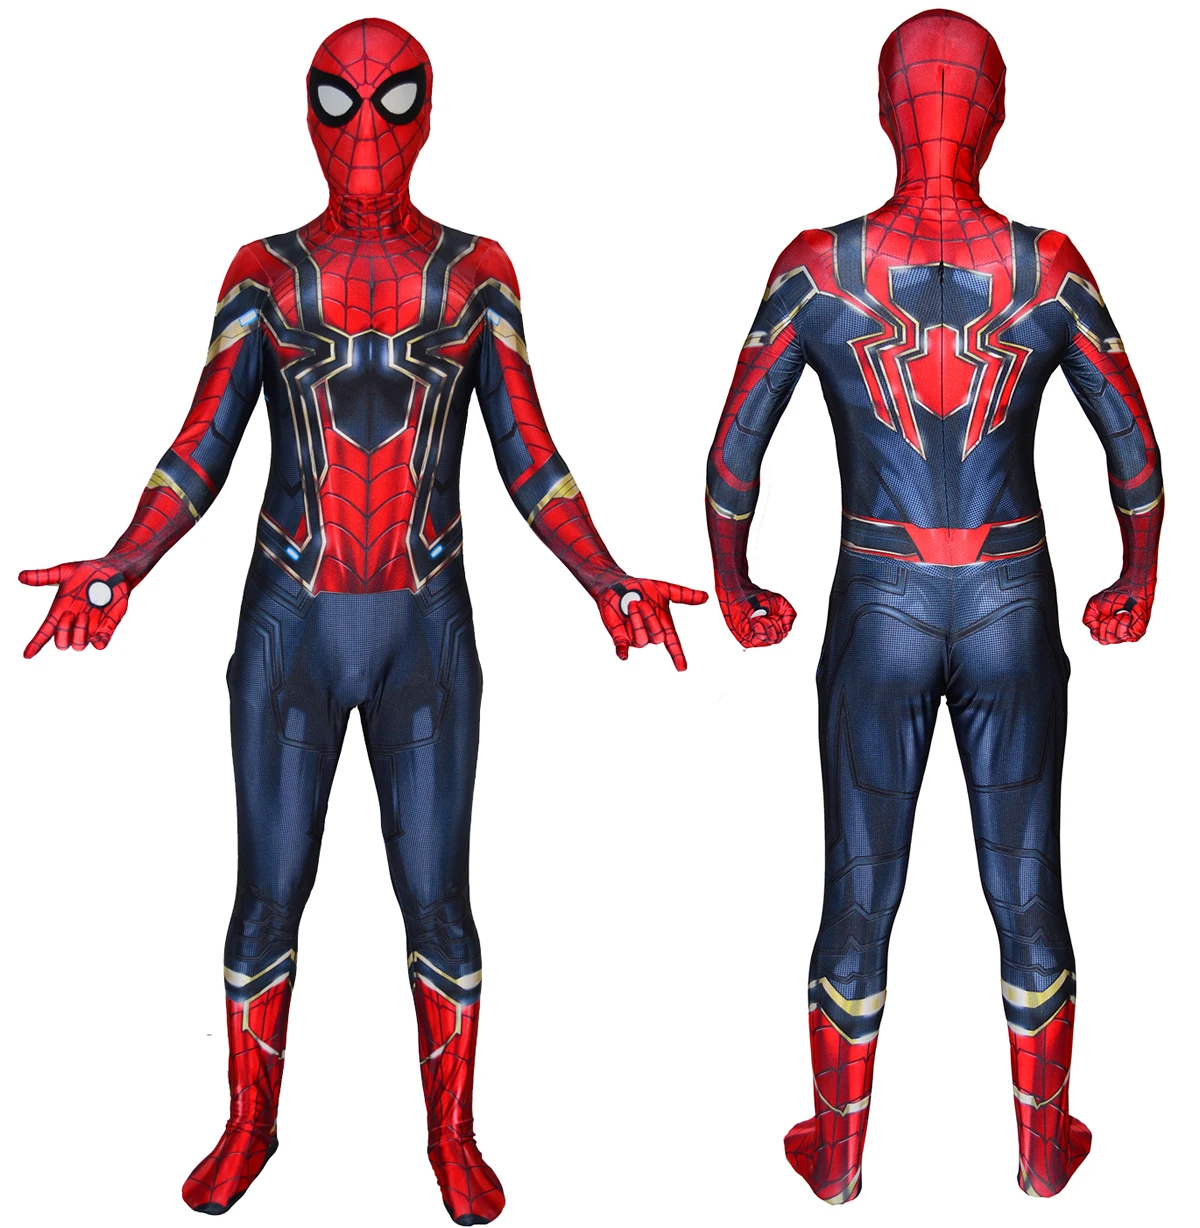 Костюм Железного Человека-паука из фильма 3D принт костюм Человека-паука из лайкры и спандекса домашний костюм боди косплей на Хэллоуин комбинезоны